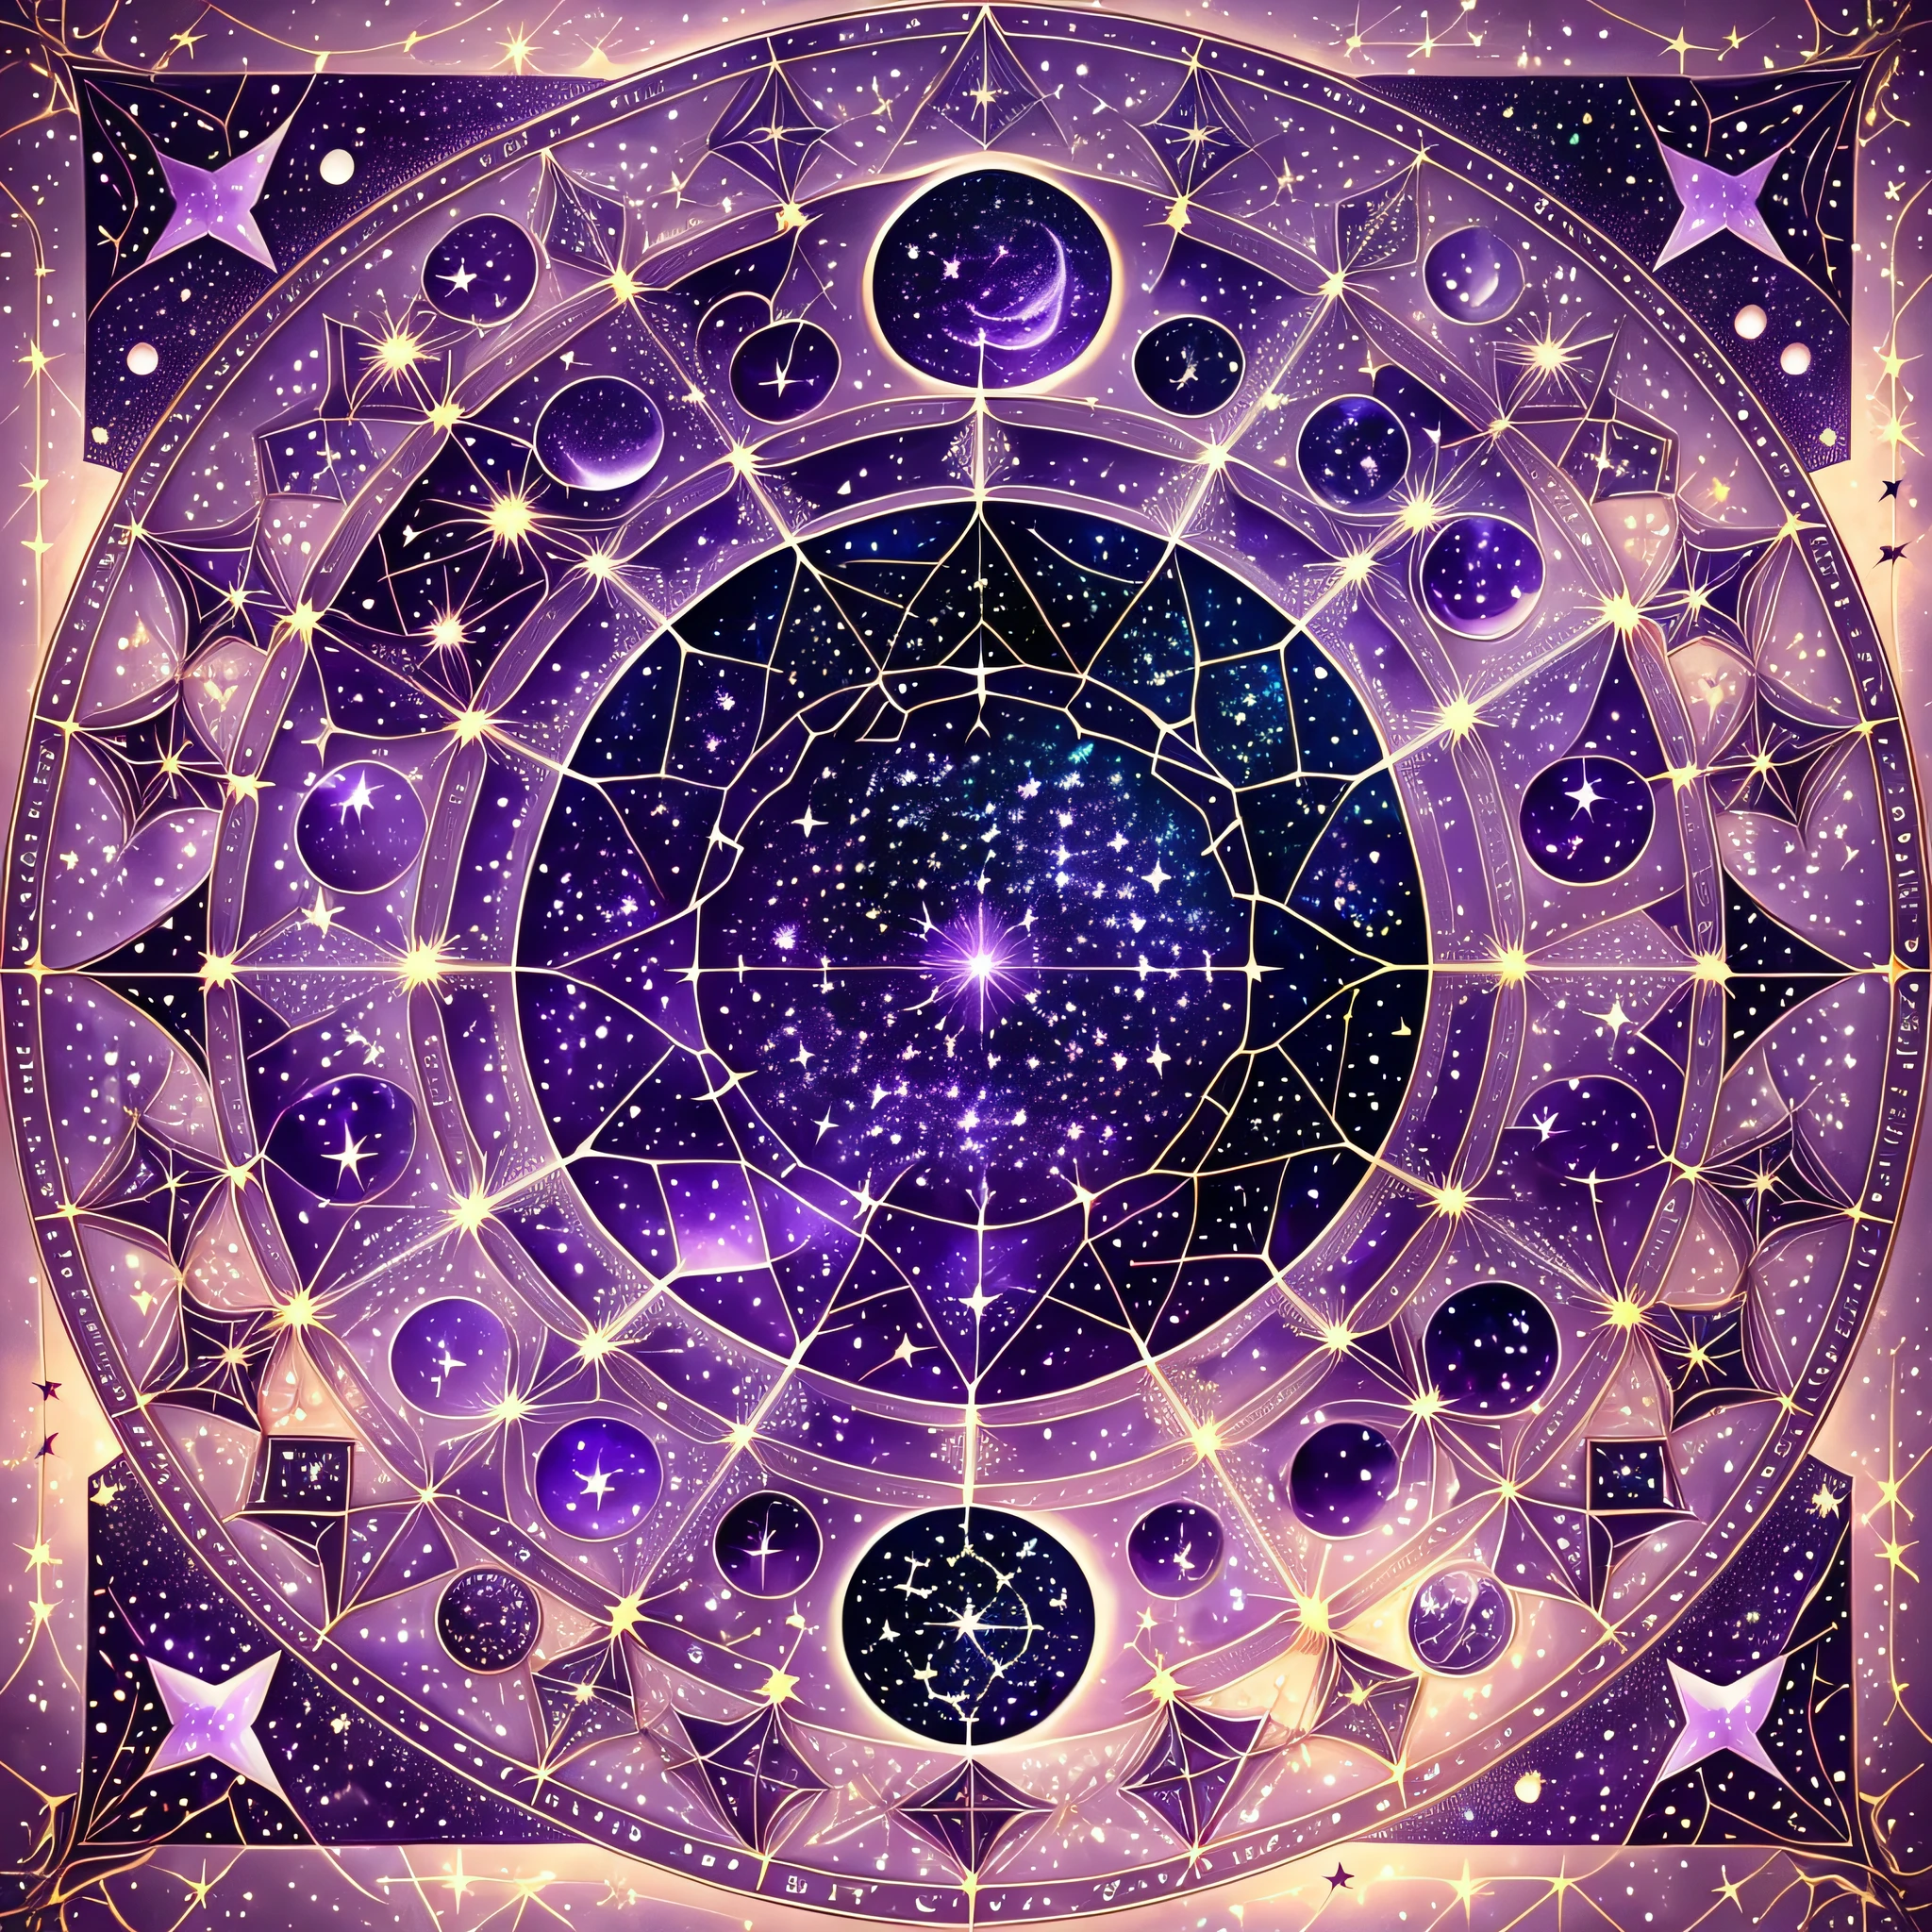 зодиакальные созвездия, звездное небо, Цвета в оттенках фиолетового, Рисование созвездий, туманность --auto --s2